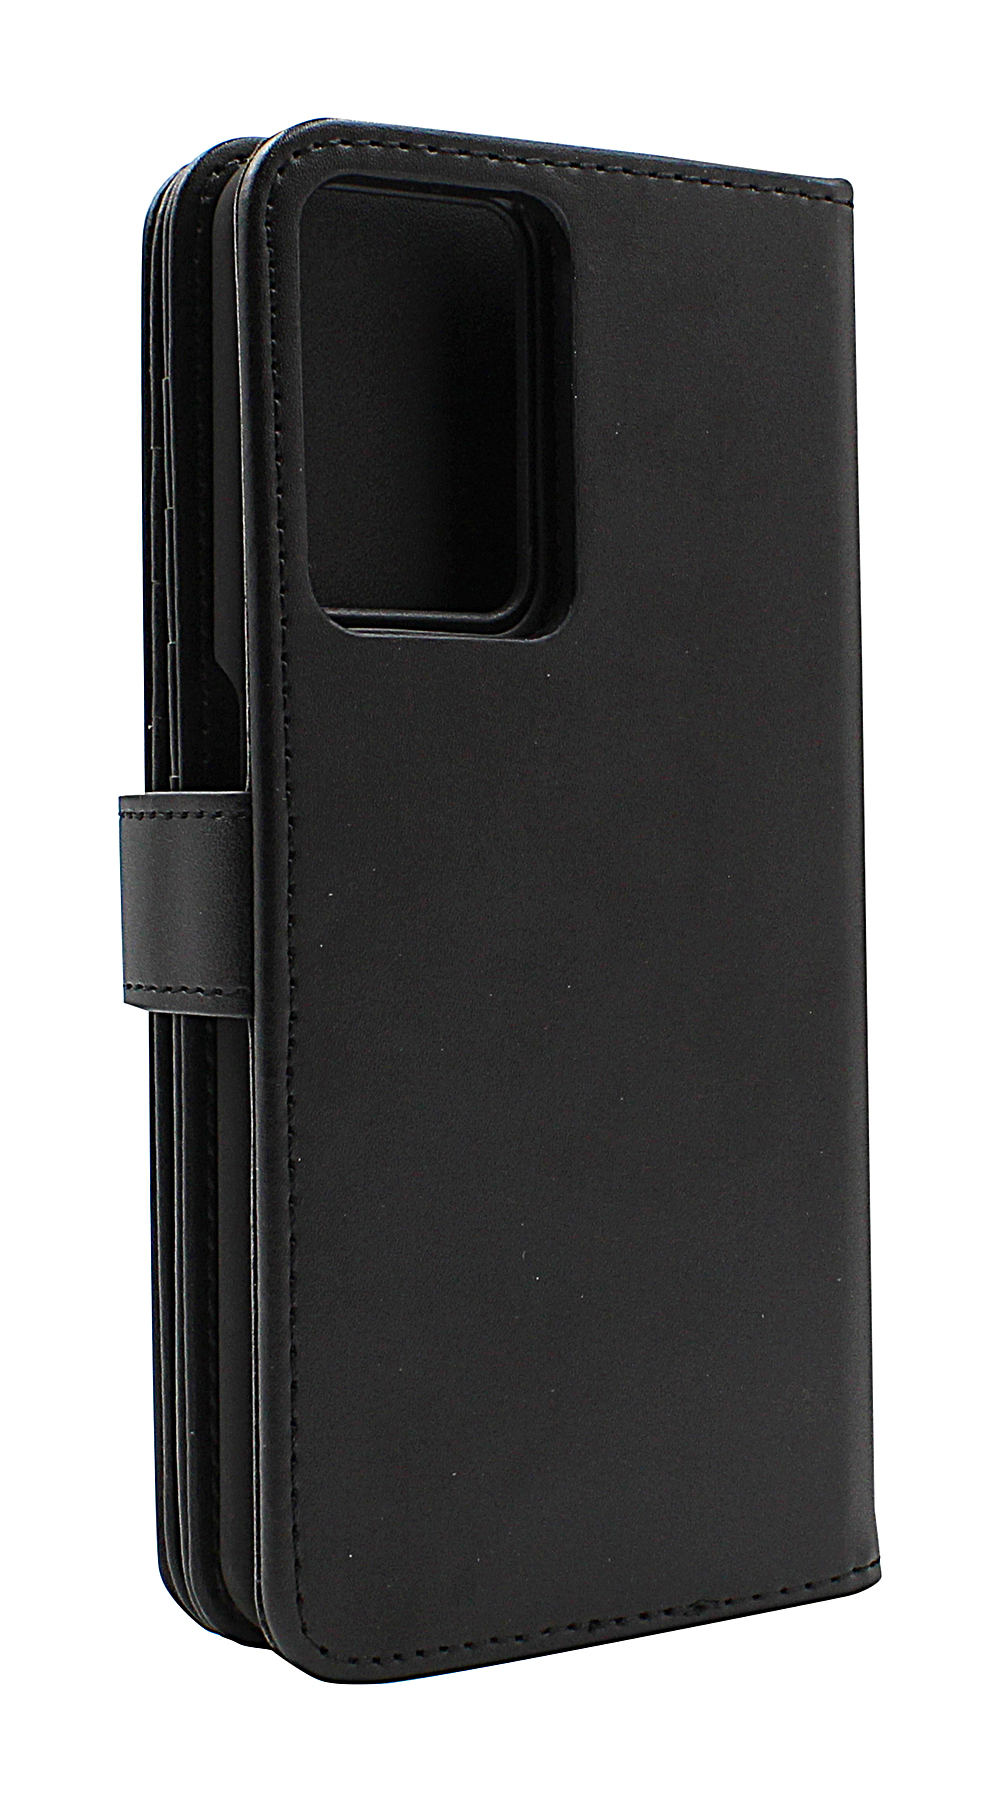 Skimblocker XL Magnet Wallet OnePlus Nord CE 2 5G